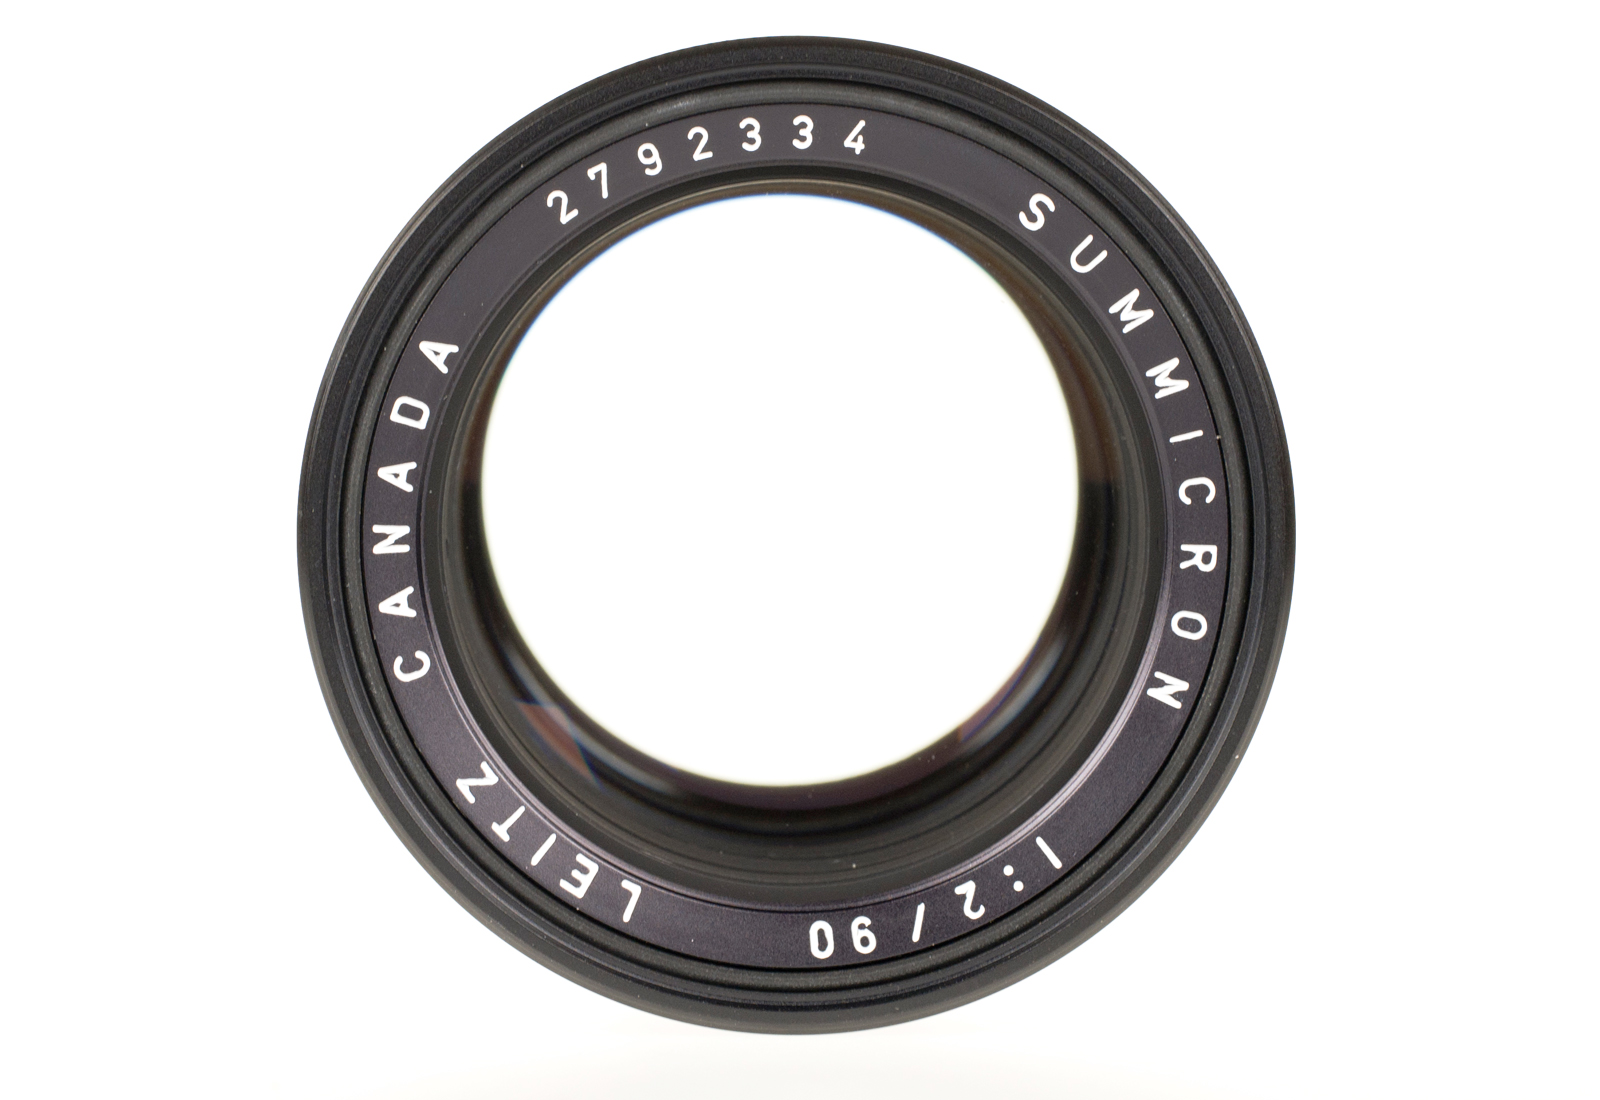 Leica Summicron-M 1:2/90mm